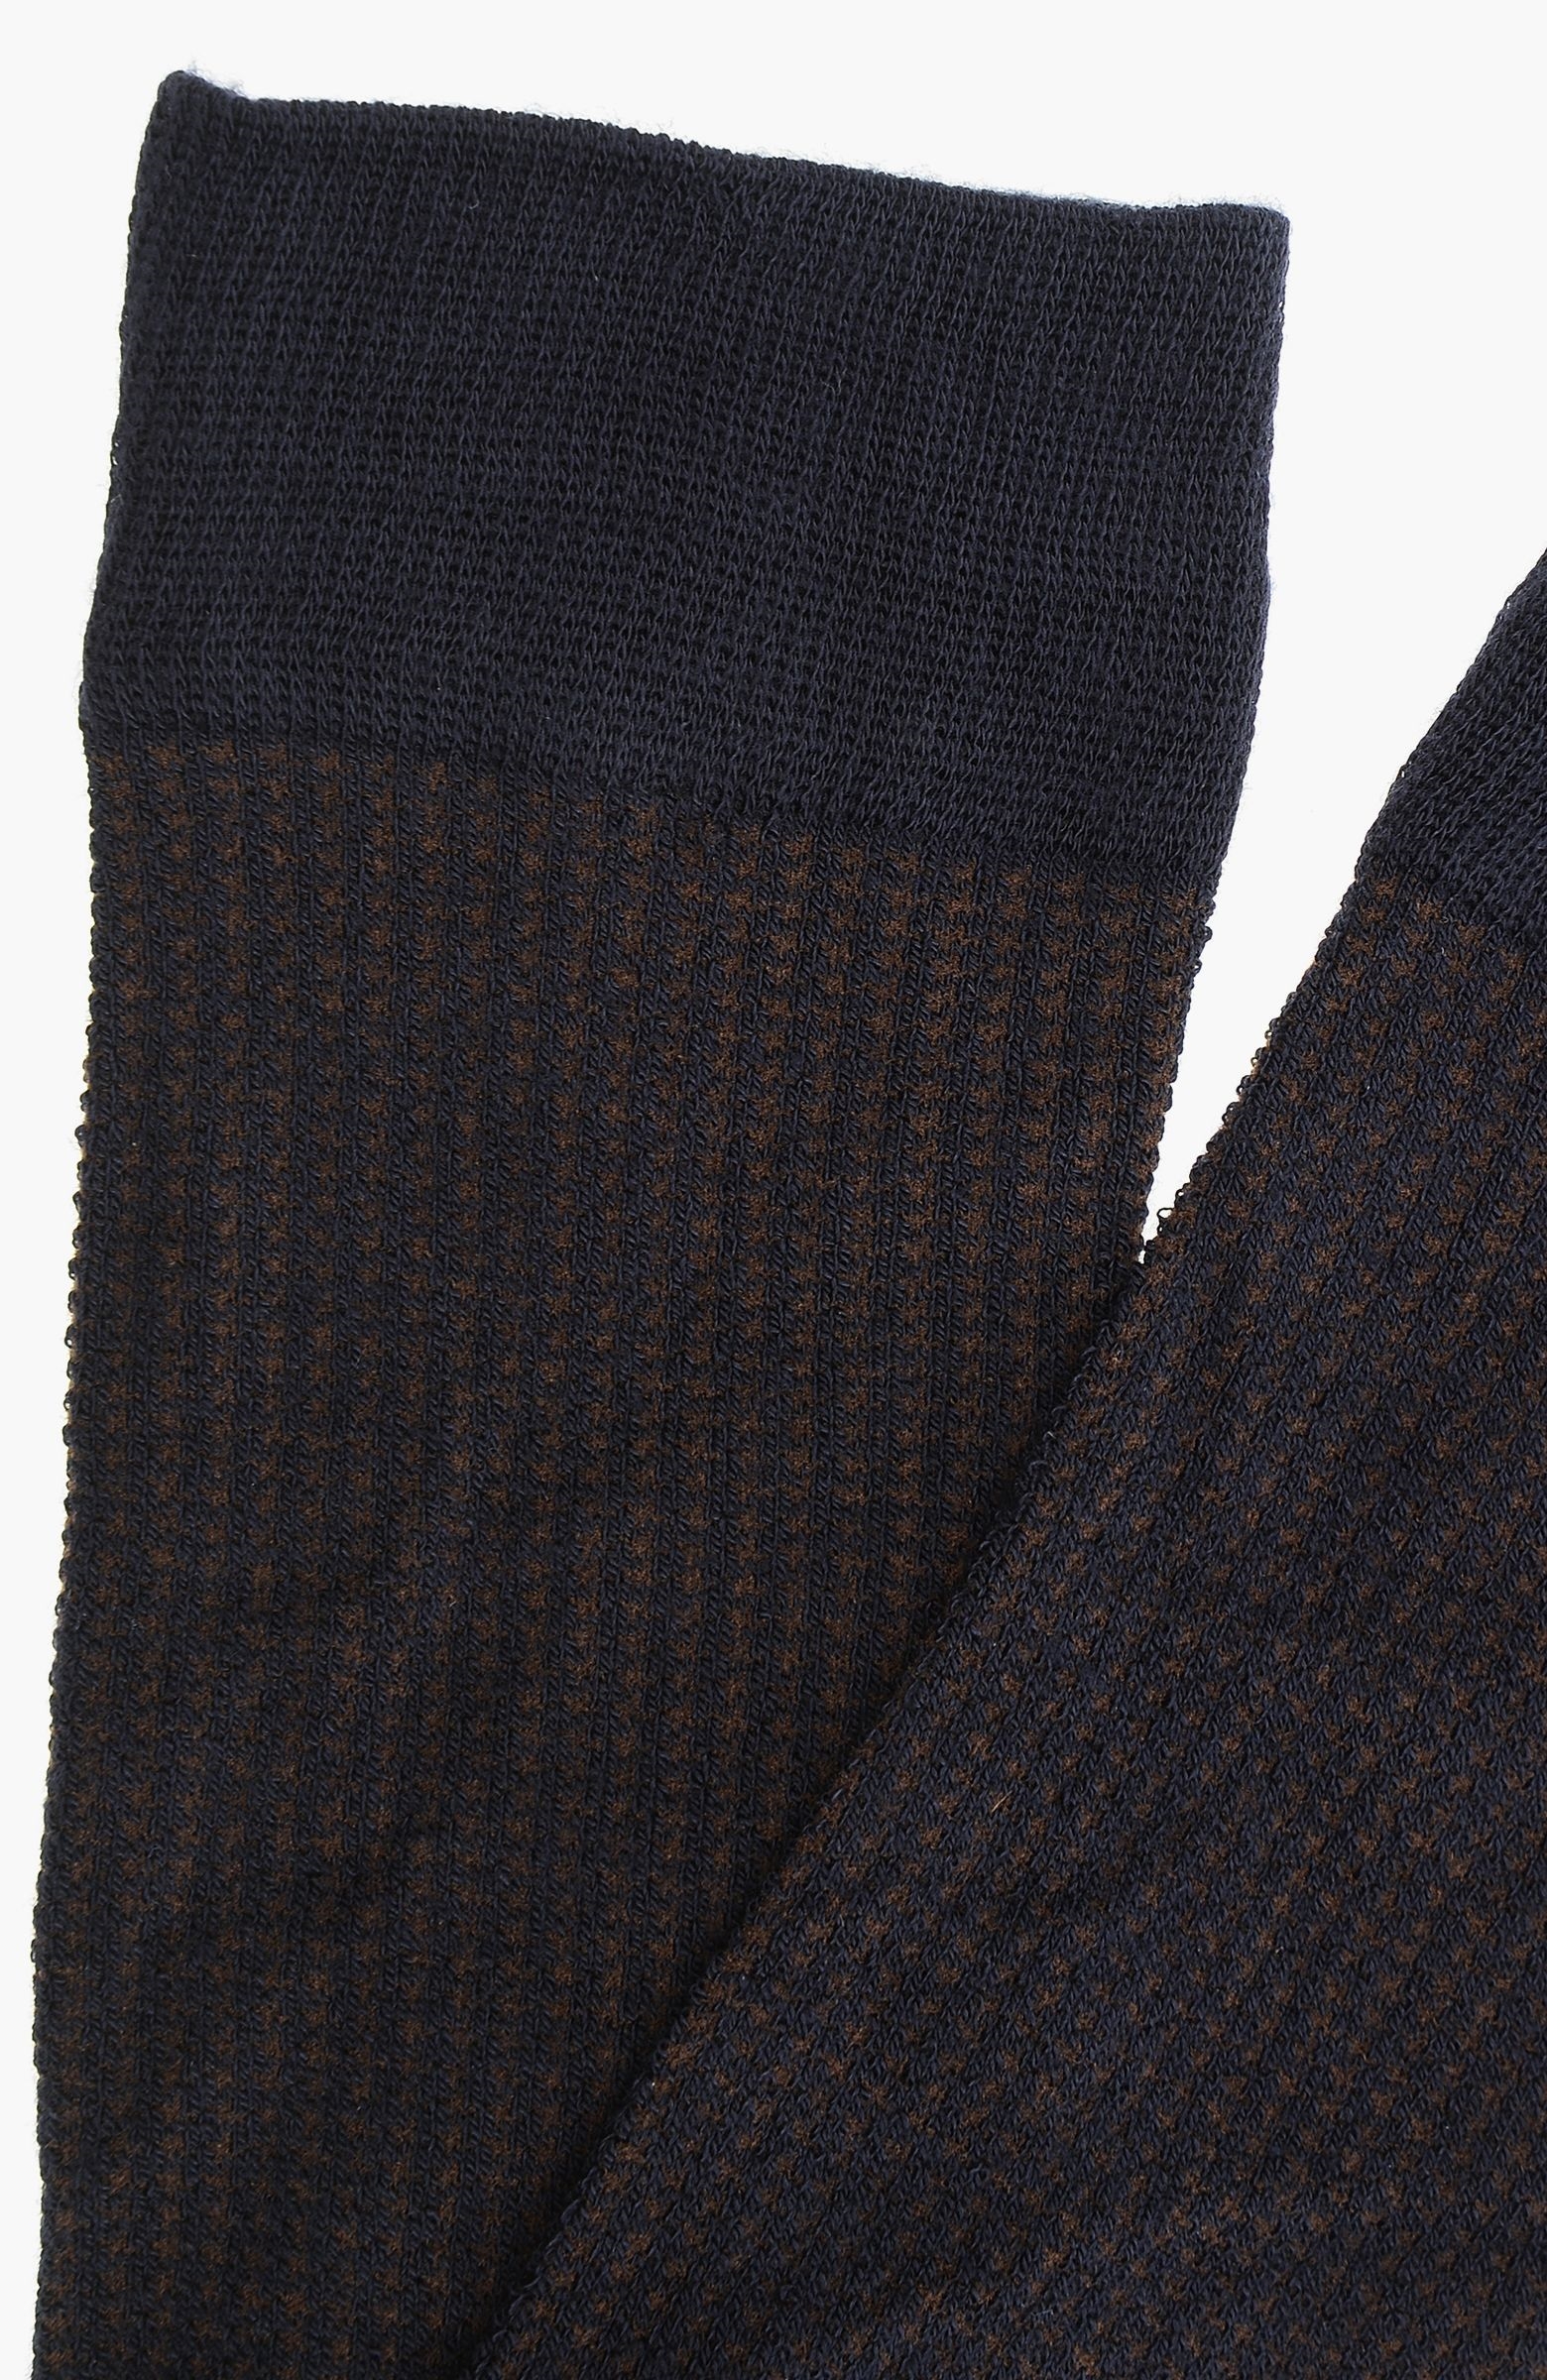 Lacivert-Kahverengi Desenli Bamboo Erkek Çorap